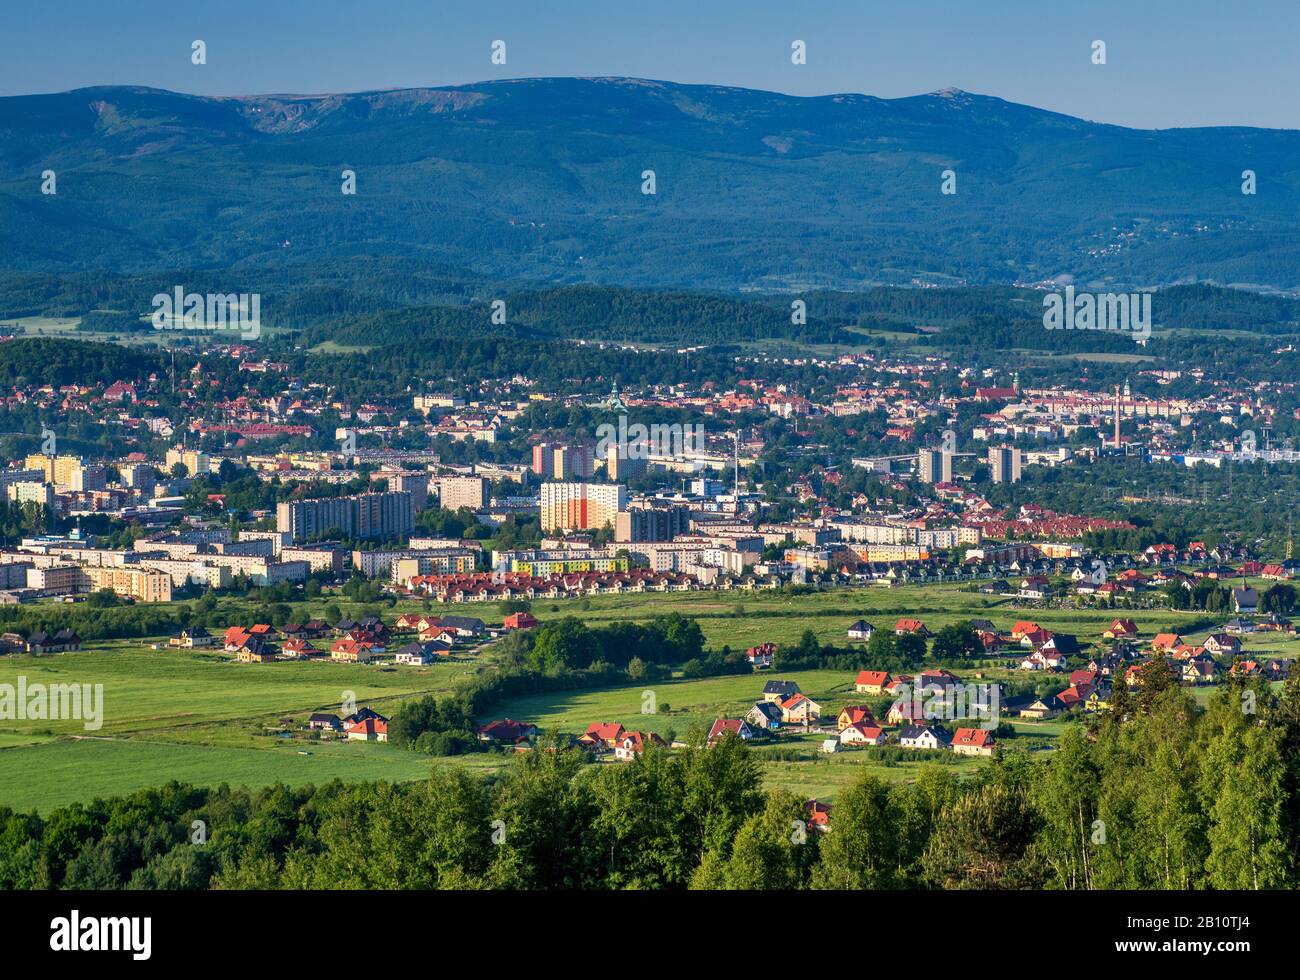 View of Jelenia Gora from Gora Szybowcowa or Glider Mountain, Karkonosze mountain range in distance, Jelenia Gora, Lower Silesia, Poland Stock Photo